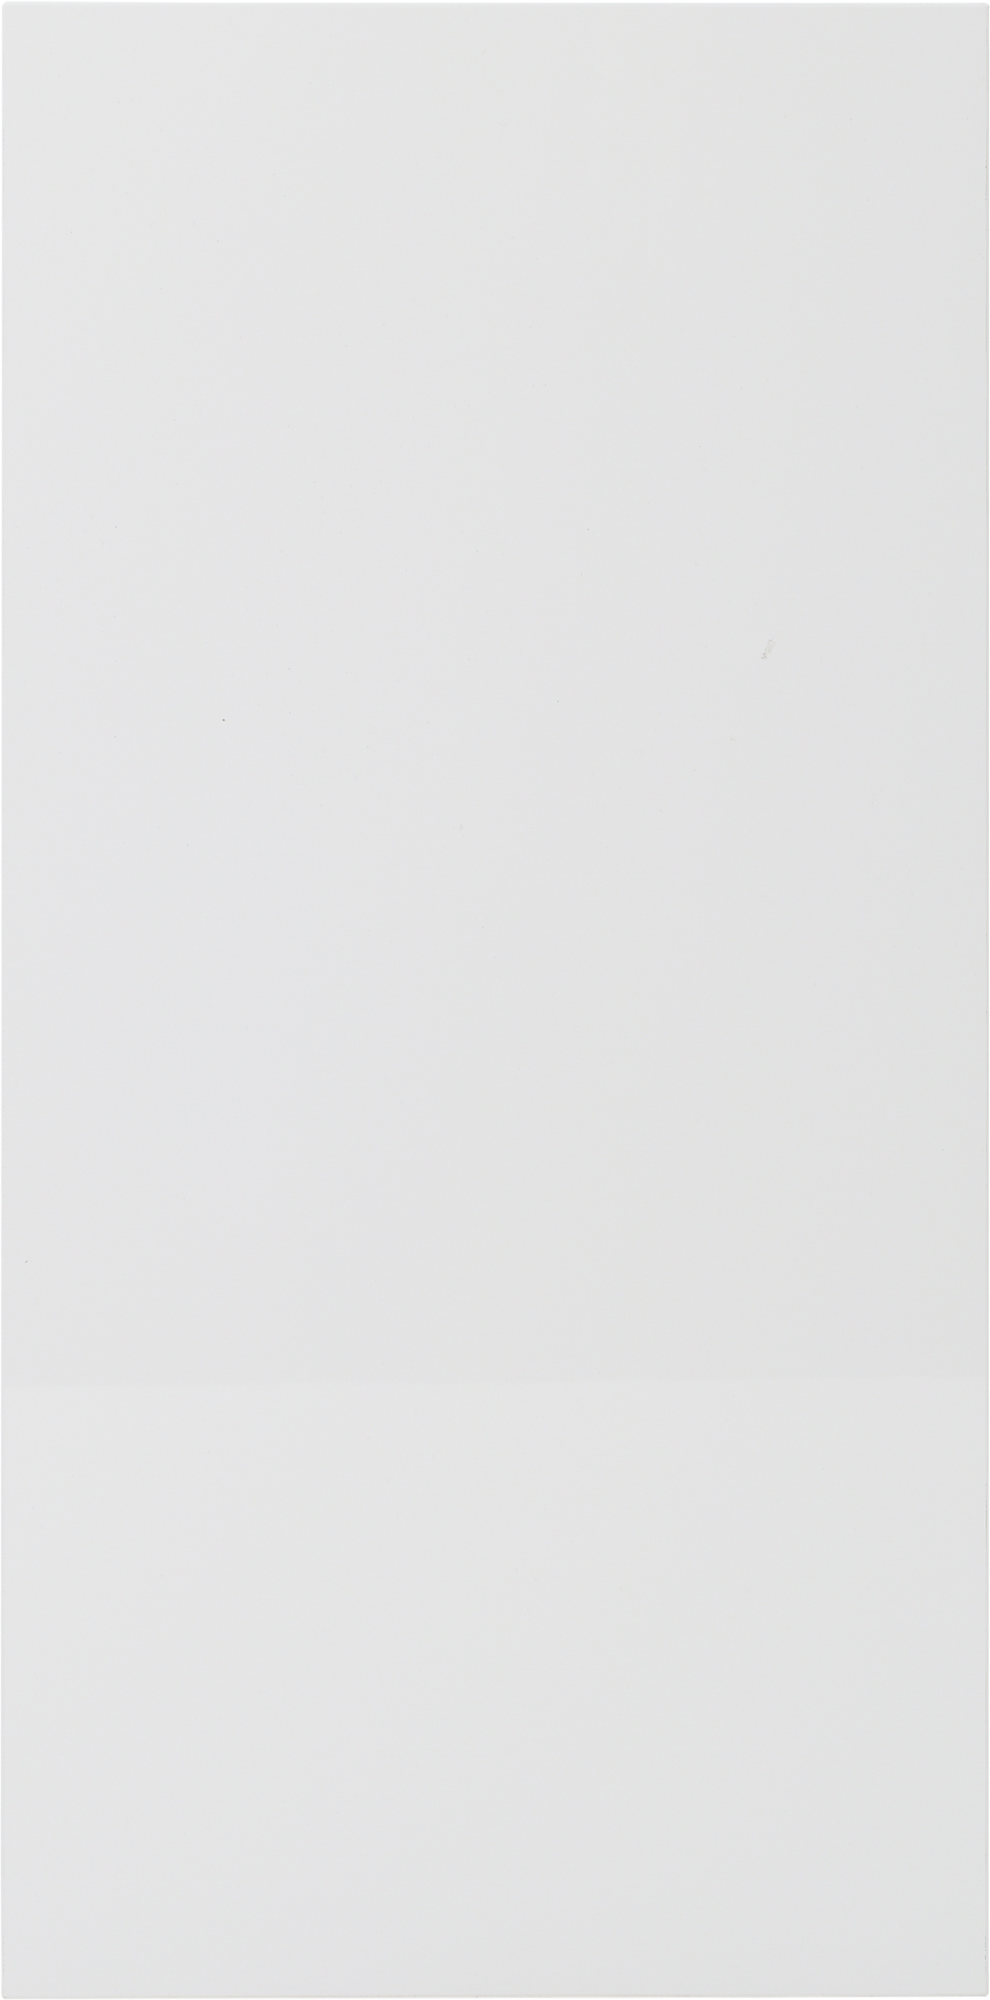 Frente de cajón de cocina atenas blanco brillo h 38.4 x l 45 cm